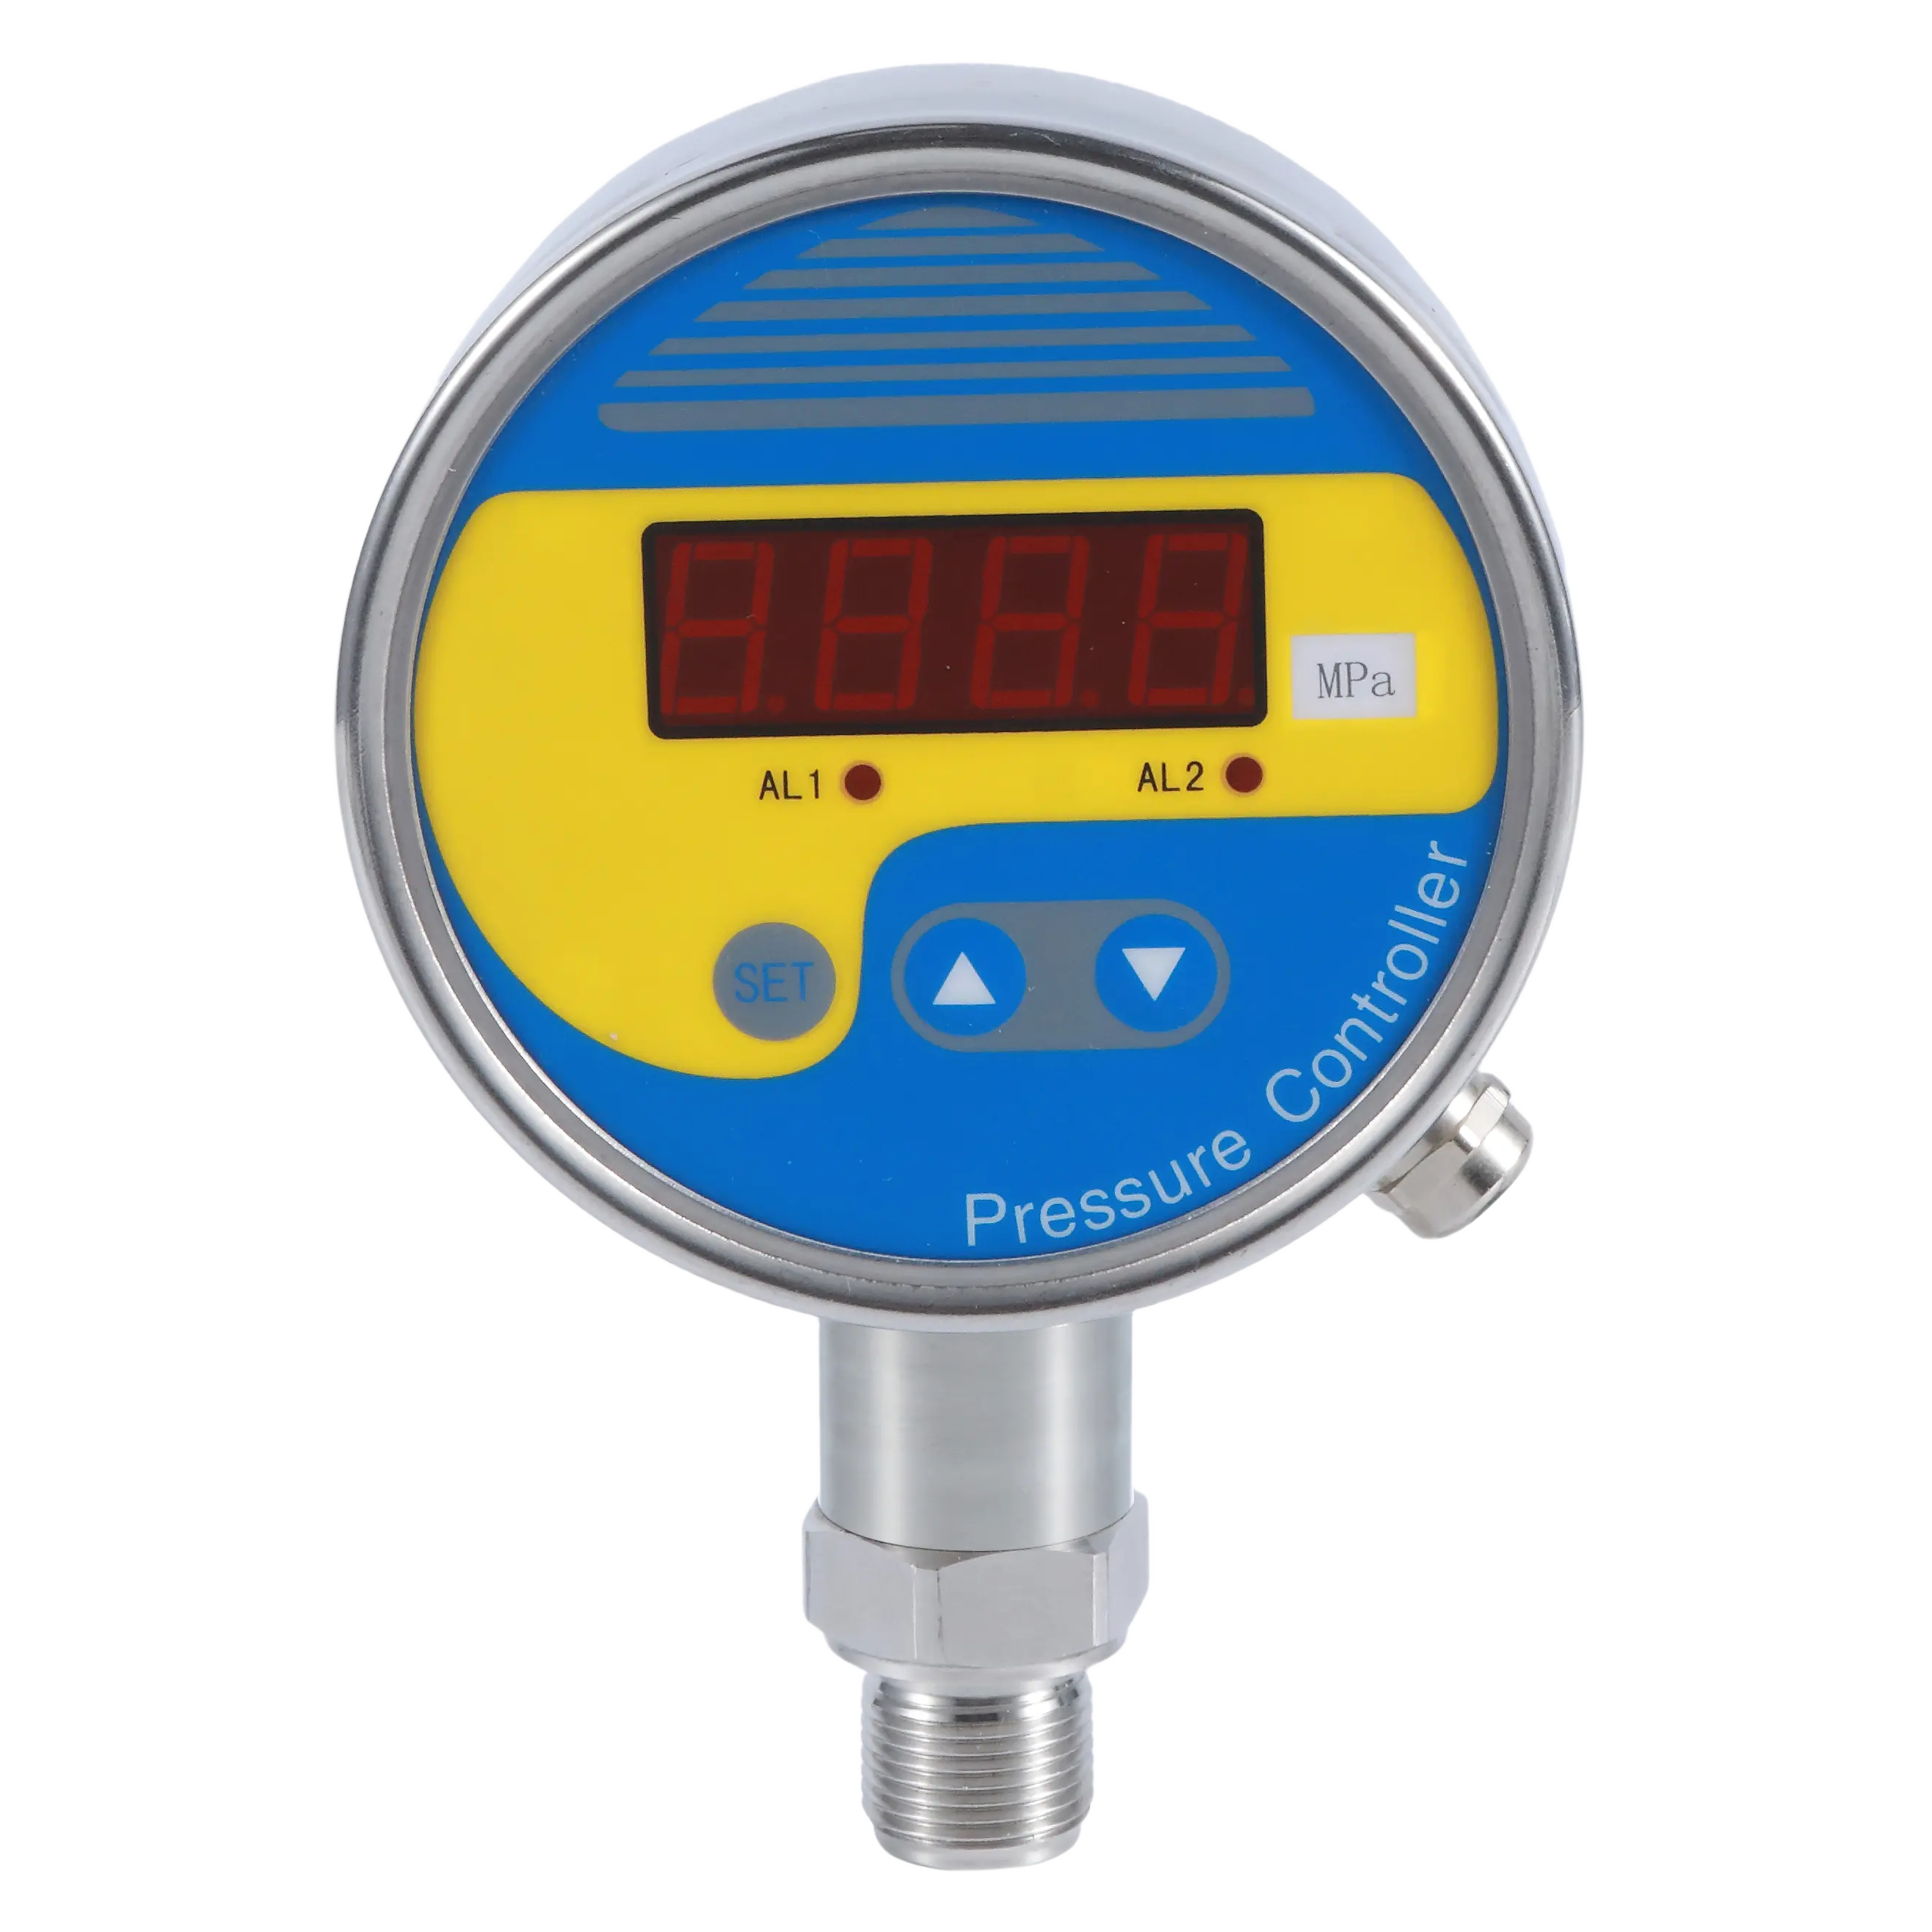 4 ~ 20mA tín hiệu Tiêu chuẩn đầu ra tùy chọn hiển thị đo áp suất thông minh công tắc áp suất với hiển thị trường